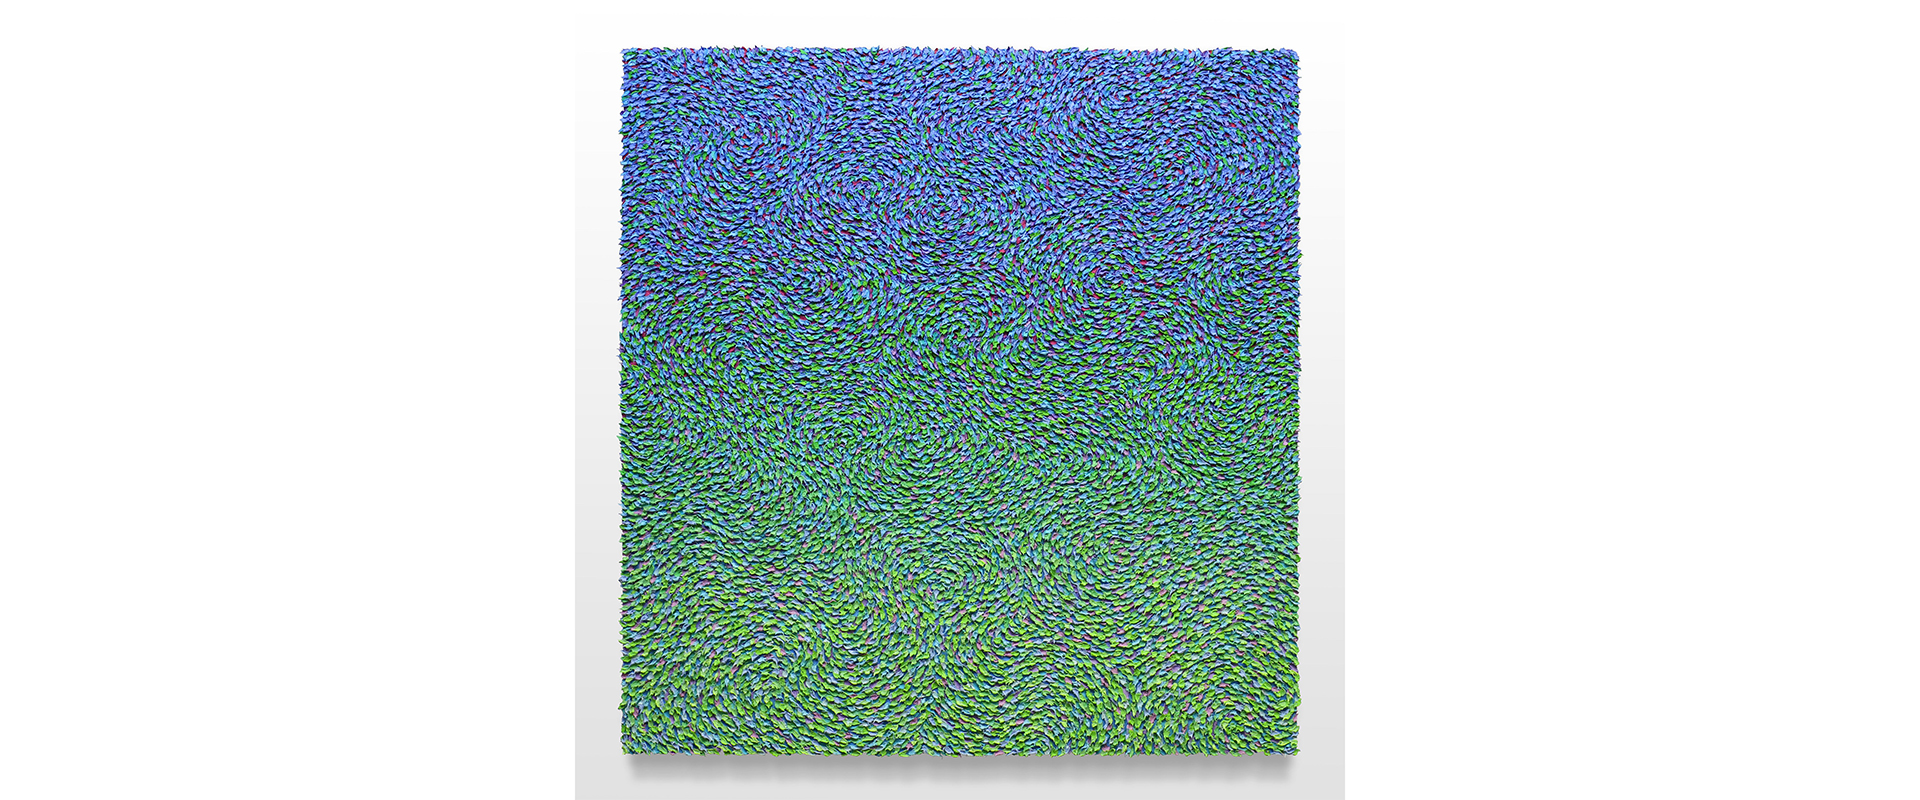 Robert Sagerman, “24,017” - 2021, Öl auf Leinwand, 122 x 117 cm